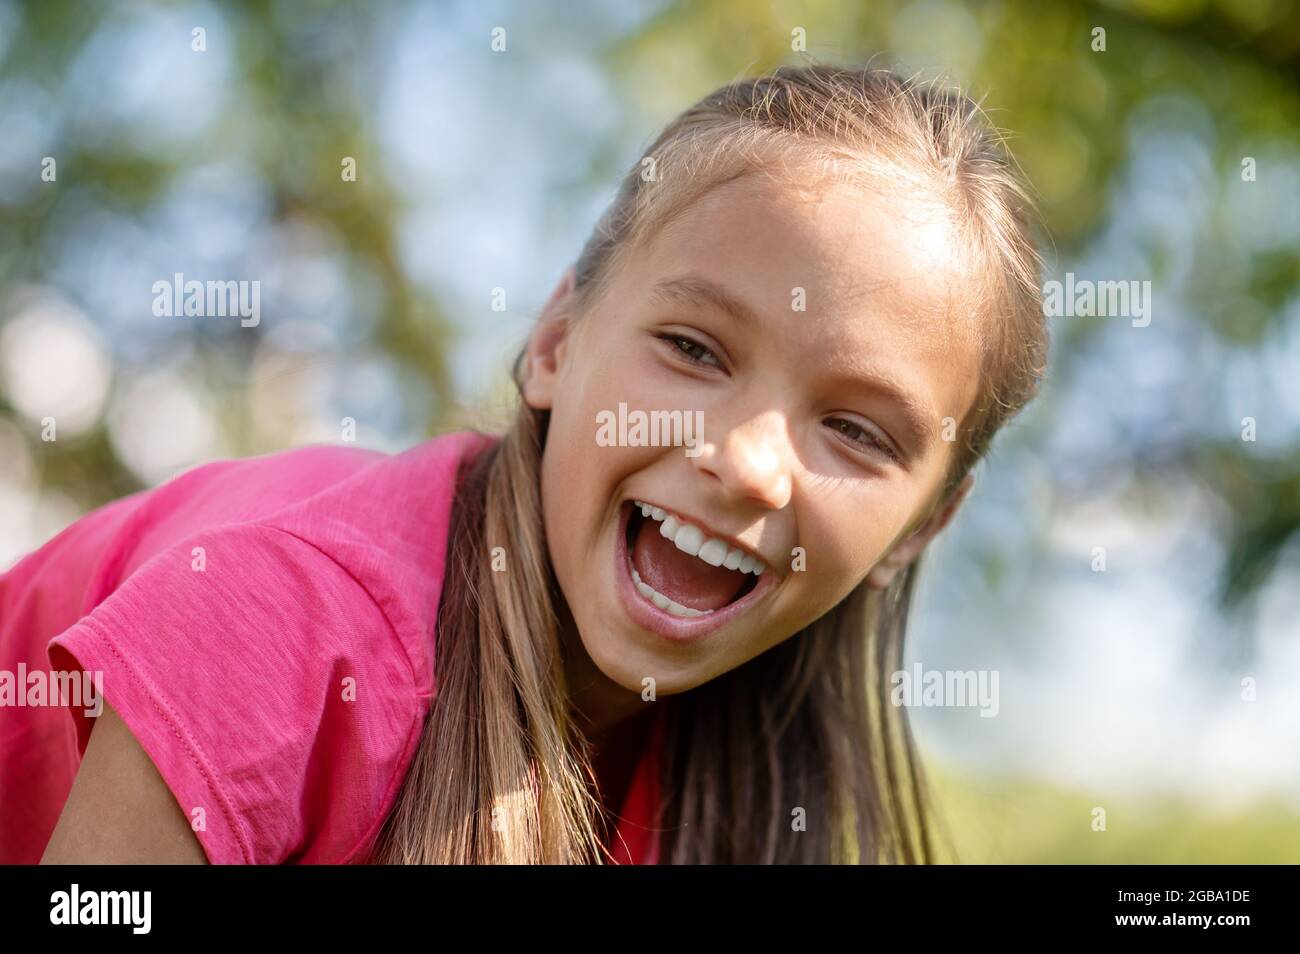 Visage d'une jolie fille enthousiaste avec un sourire éclatant Banque D'Images